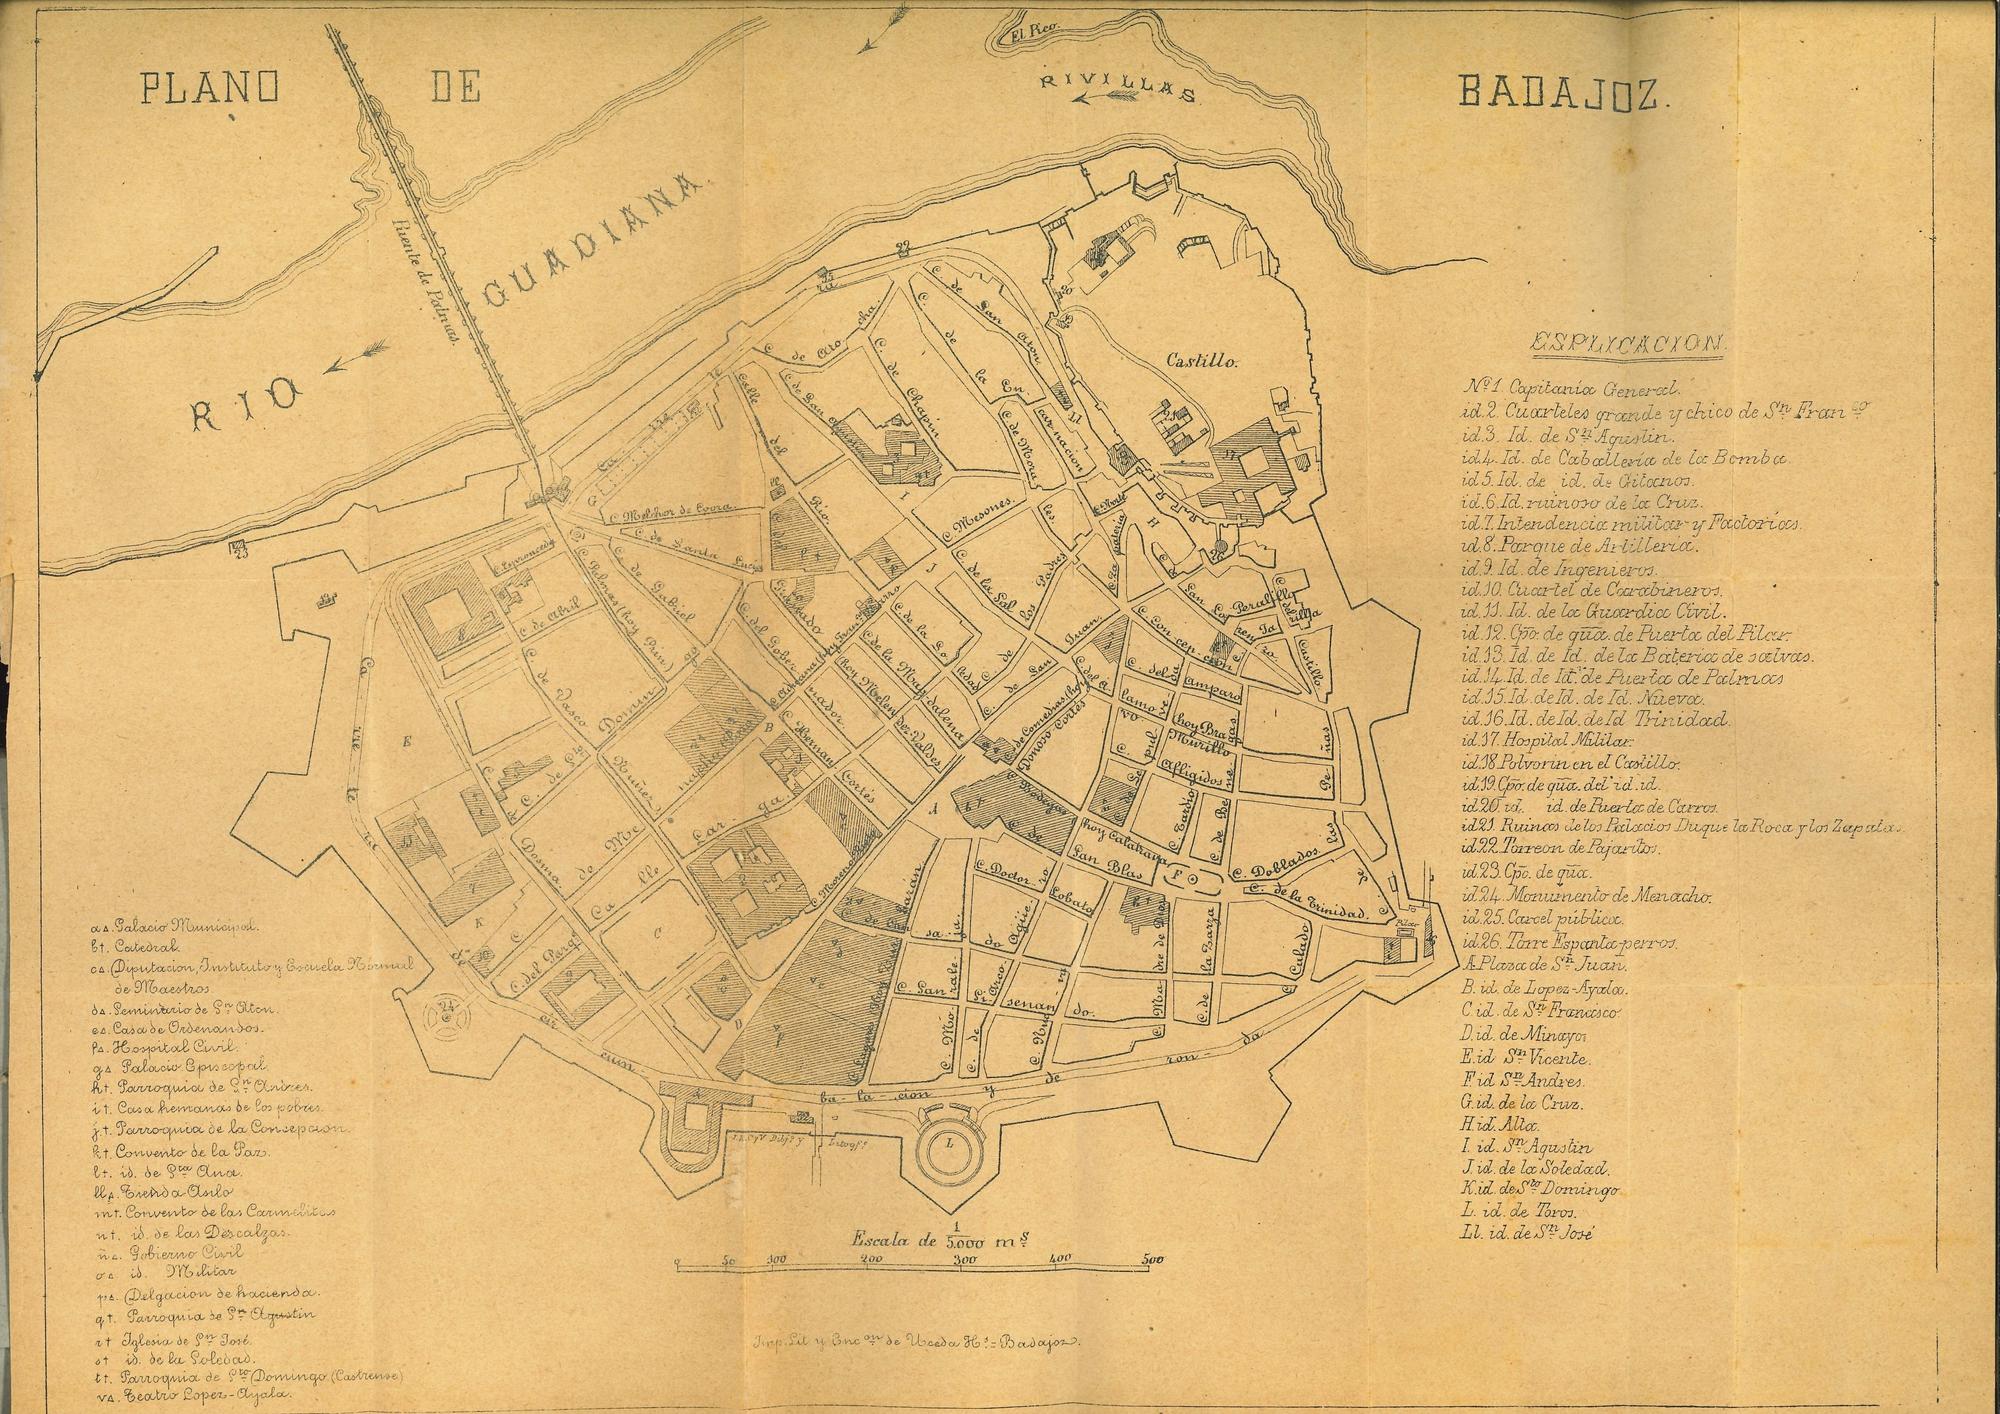 Plano de Badajoz, 1892